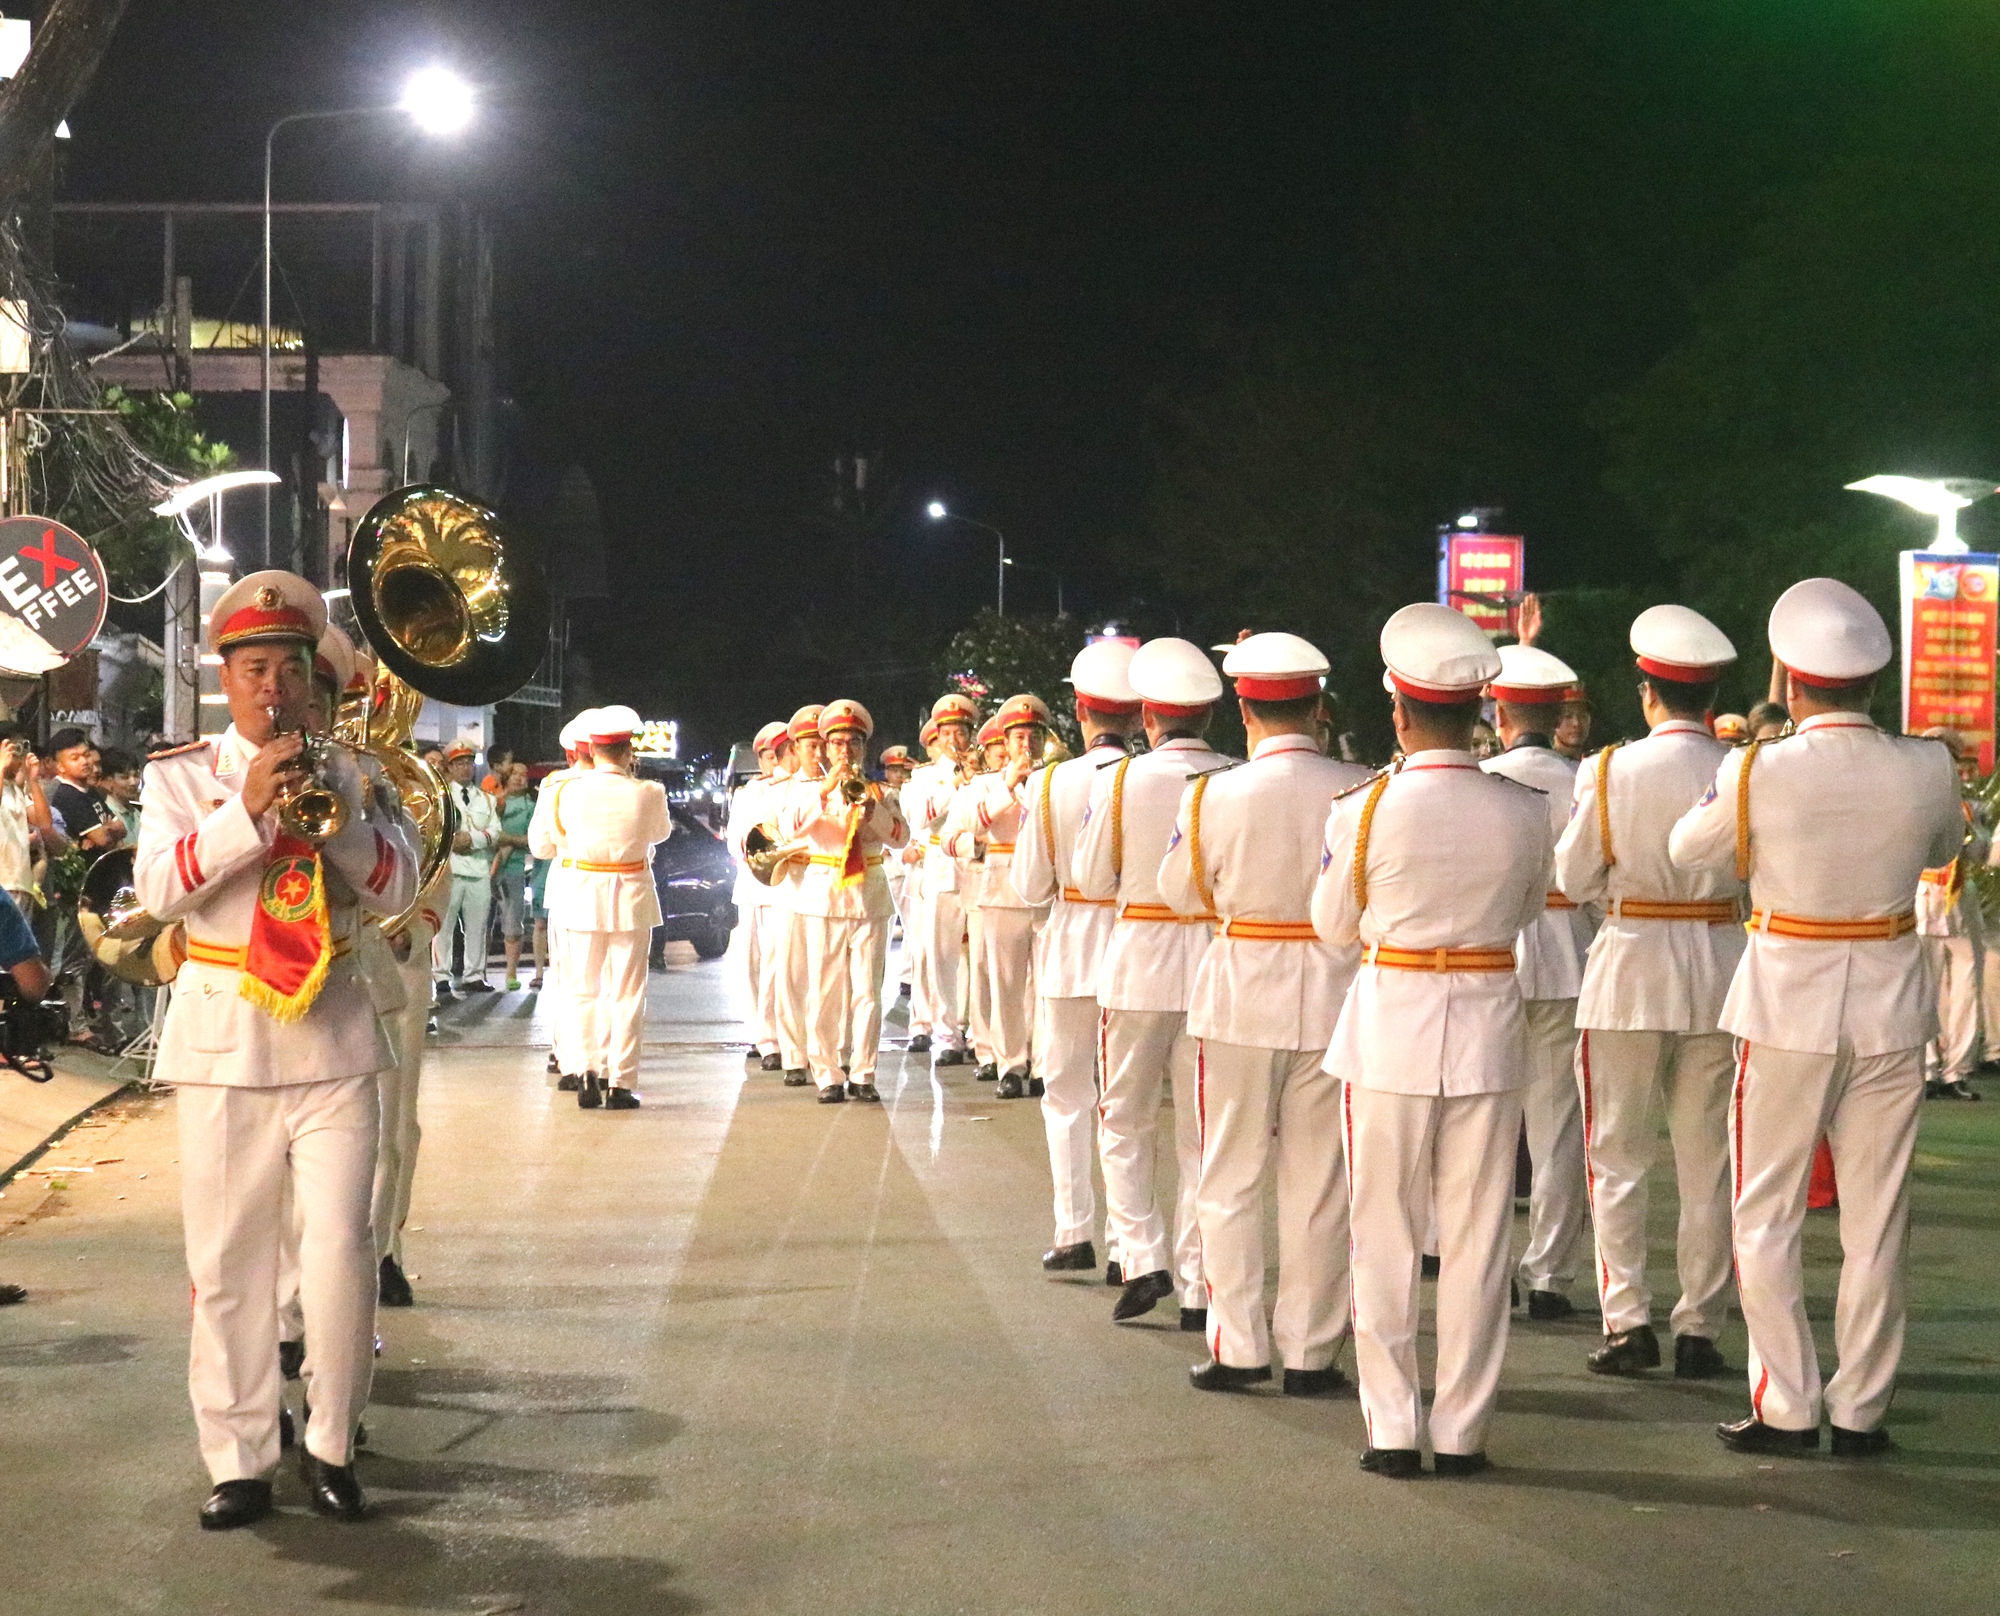 CLIP: Đoàn nghi lễ Công an nhân dân biểu diễn tại bến Ninh Kiều - Ảnh 3.